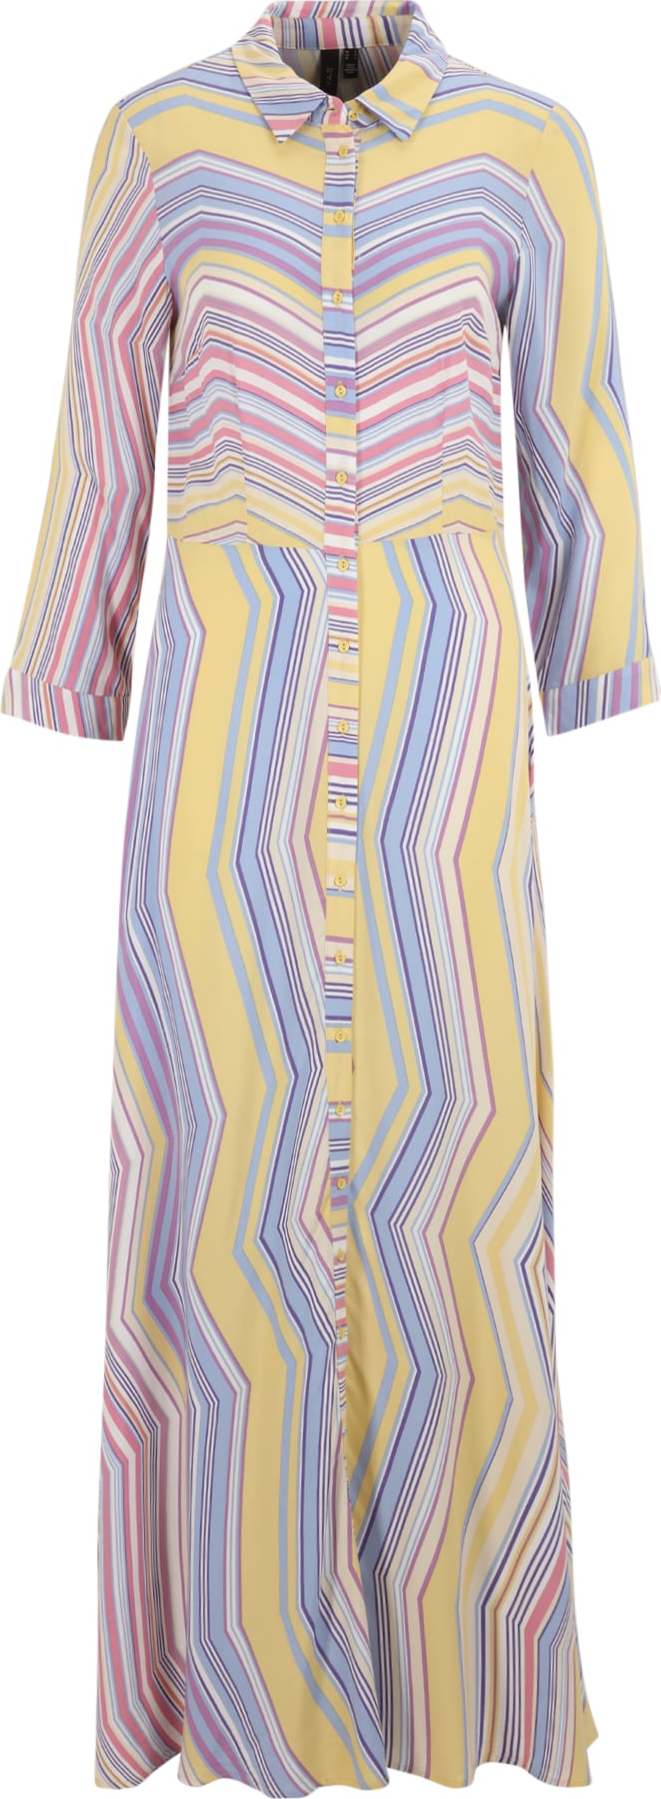 Y.A.S Tall Košilové šaty 'SAVANNA' světlemodrá / žlutá / fialová / růžová / bílá